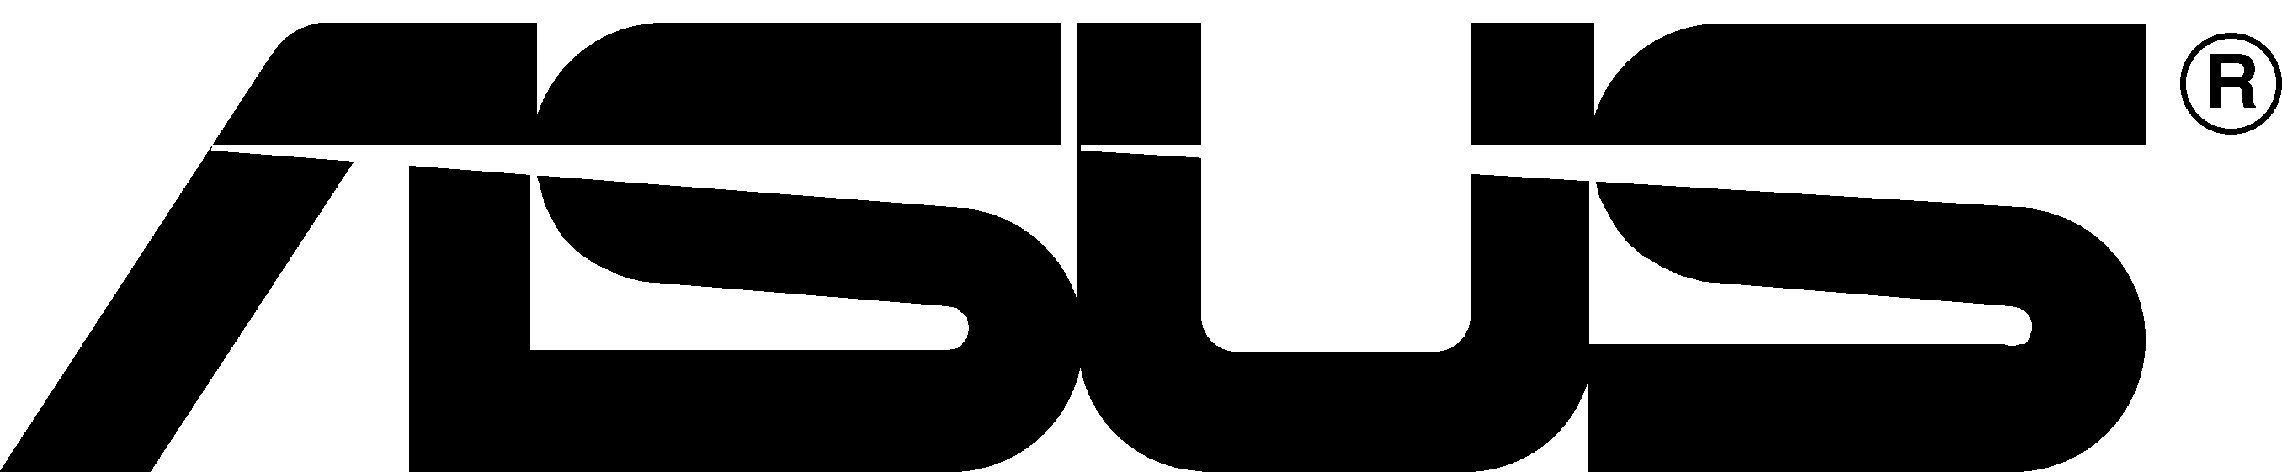 Asus Logo - LogoDix